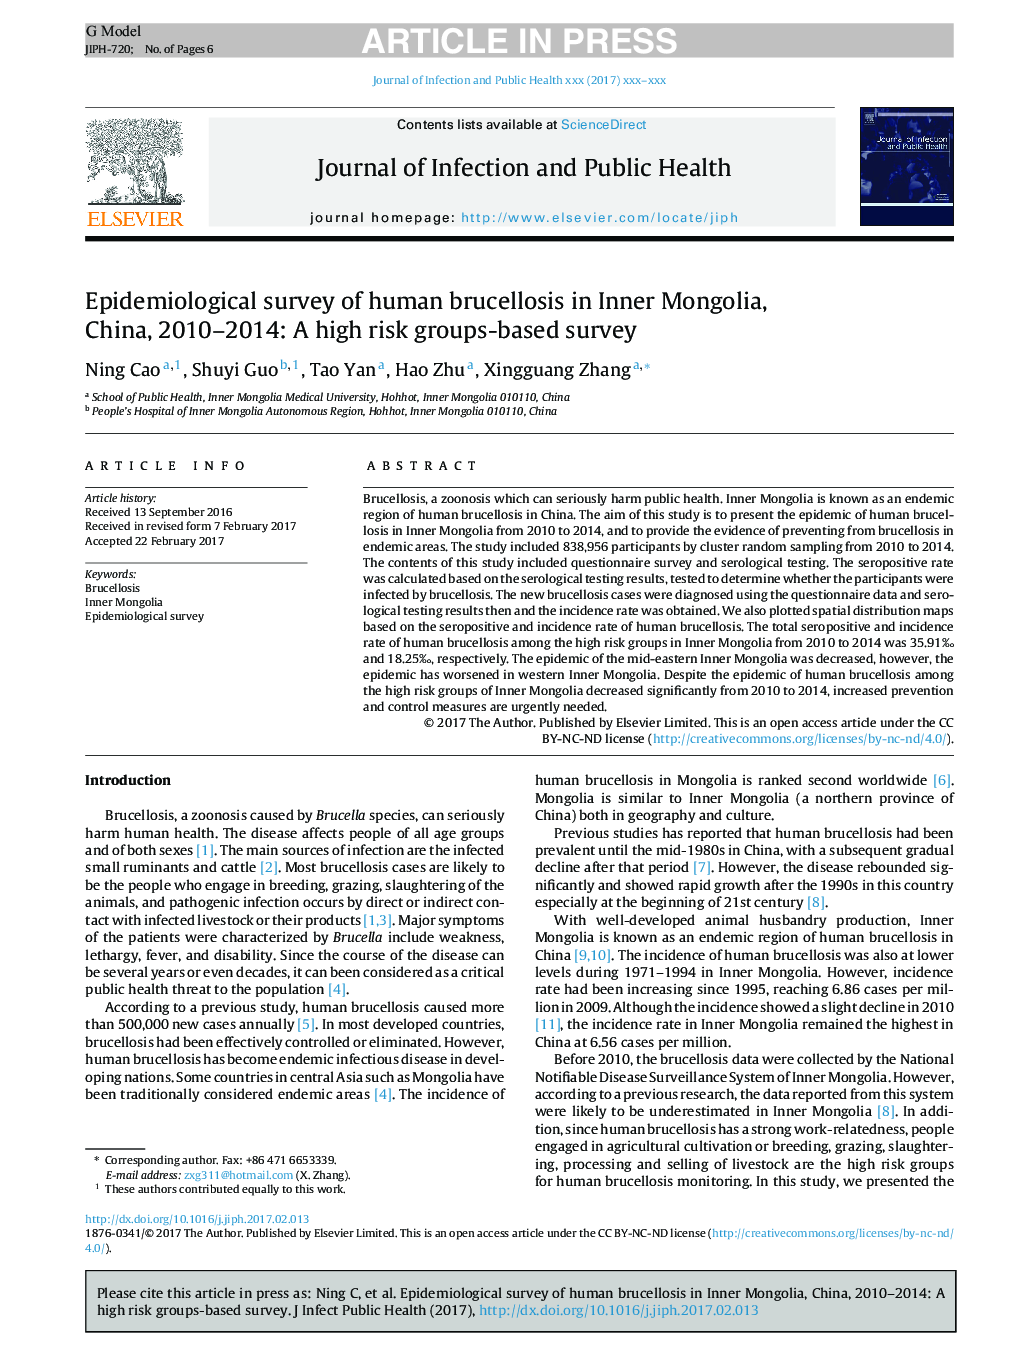 بررسی اپیدمیولوژیک بروسلوز انسانی در مغولستان داخلی، چین، 2010-2014: یک گروه تحقیقاتی مبتنی بر ریسک بالا 